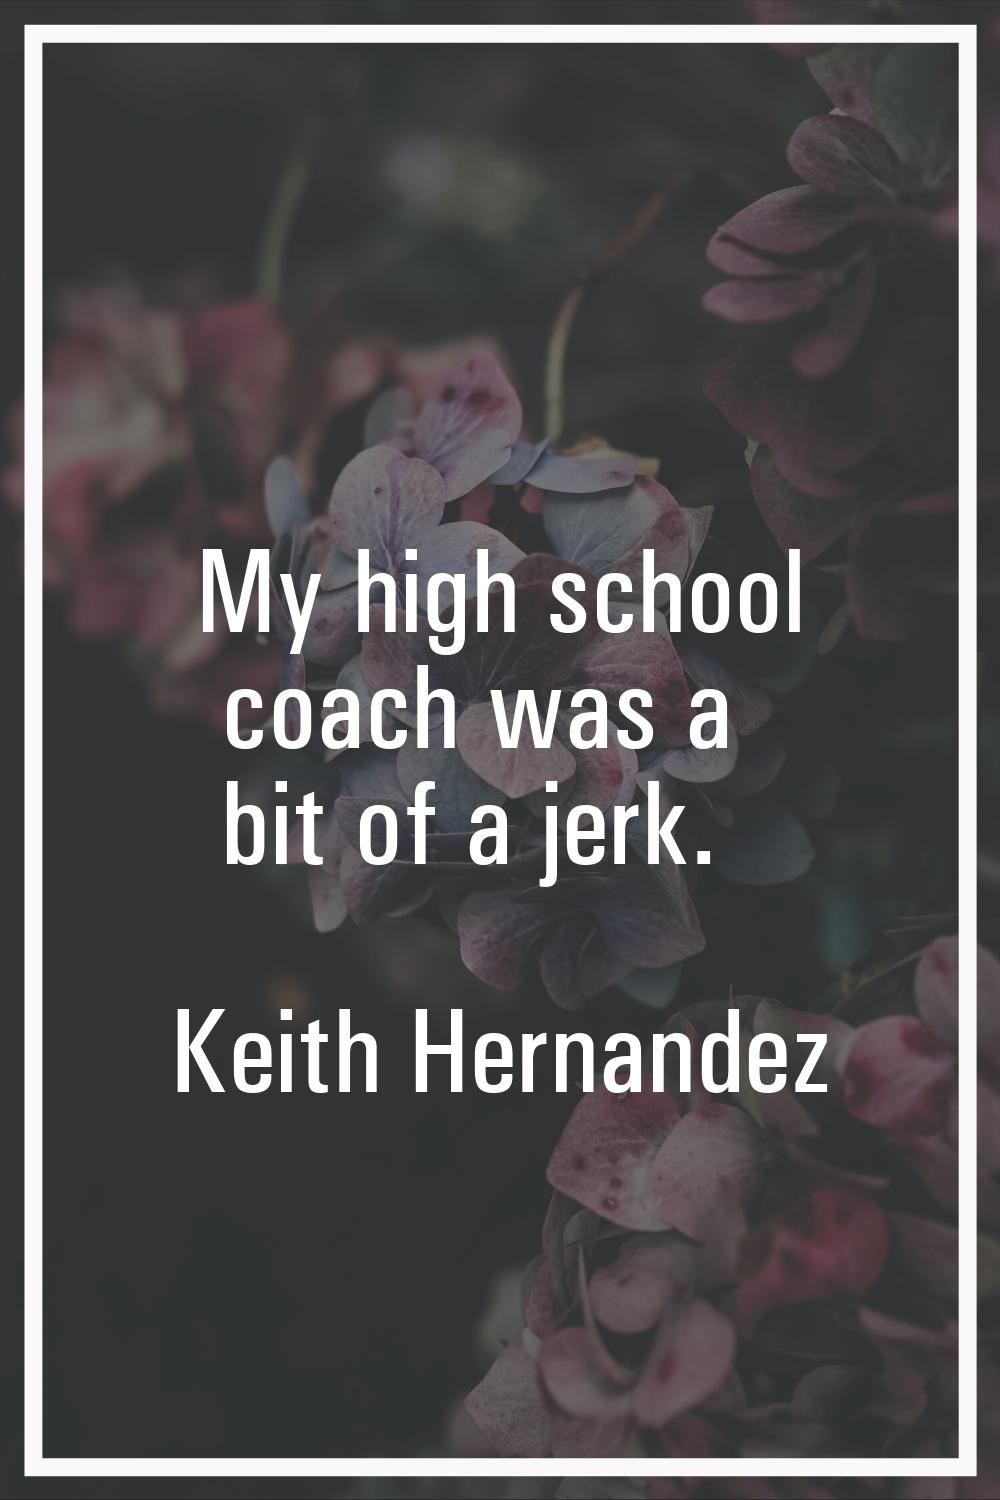 My high school coach was a bit of a jerk.